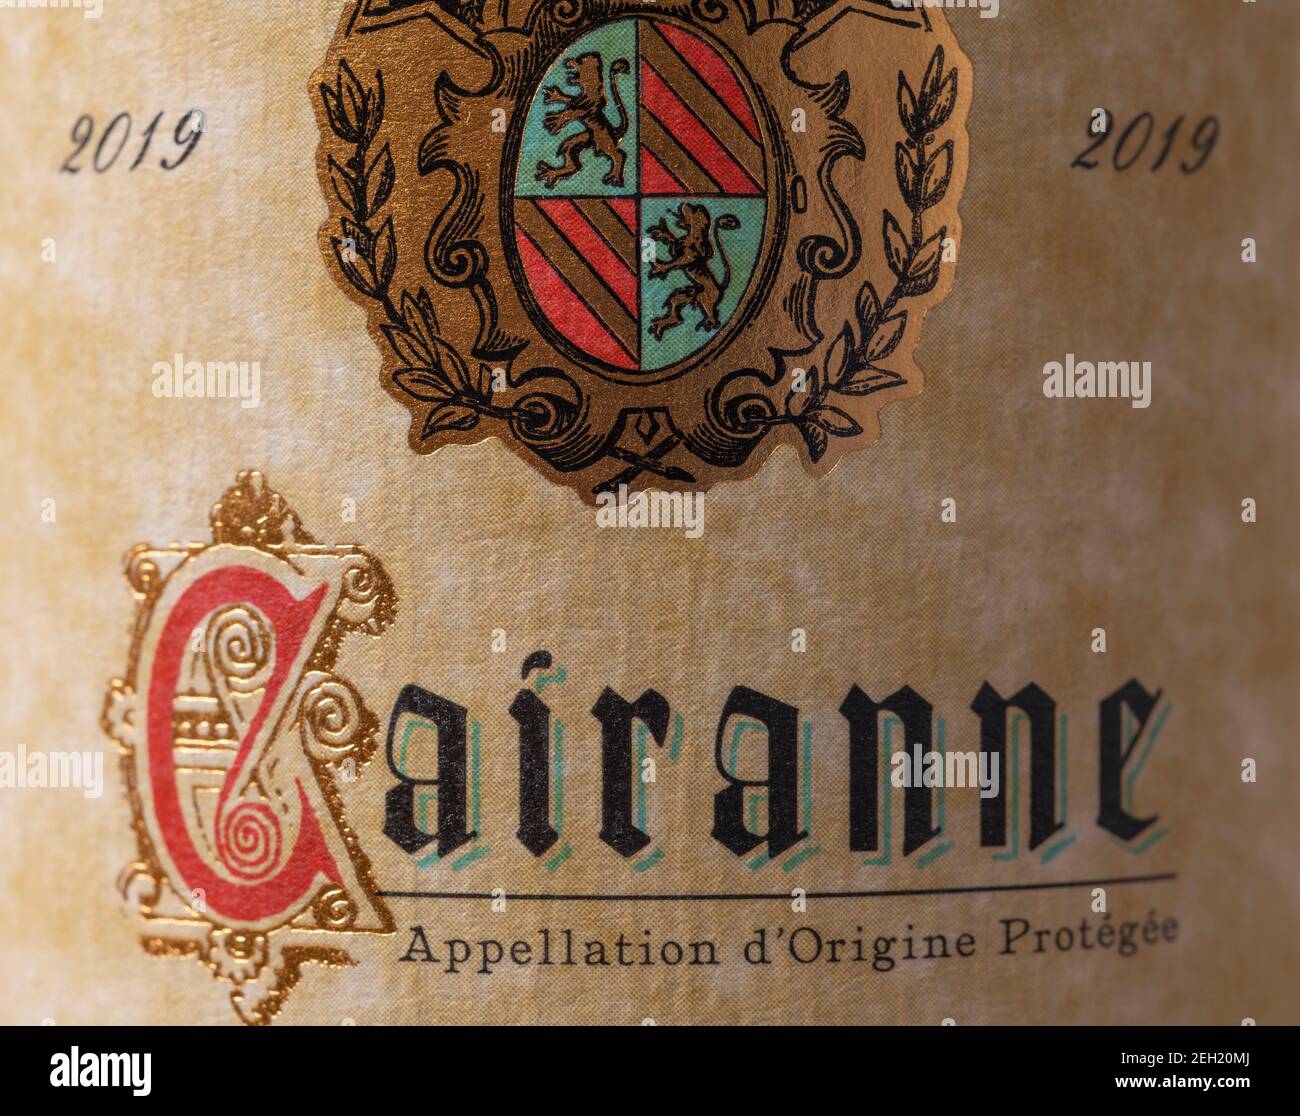 Cairanne 2019 French Southern Rhône Valley vino bottiglia etichetta closeup. Cairanne ha ricevuto lo status di Cru nel 2016. Foto Stock